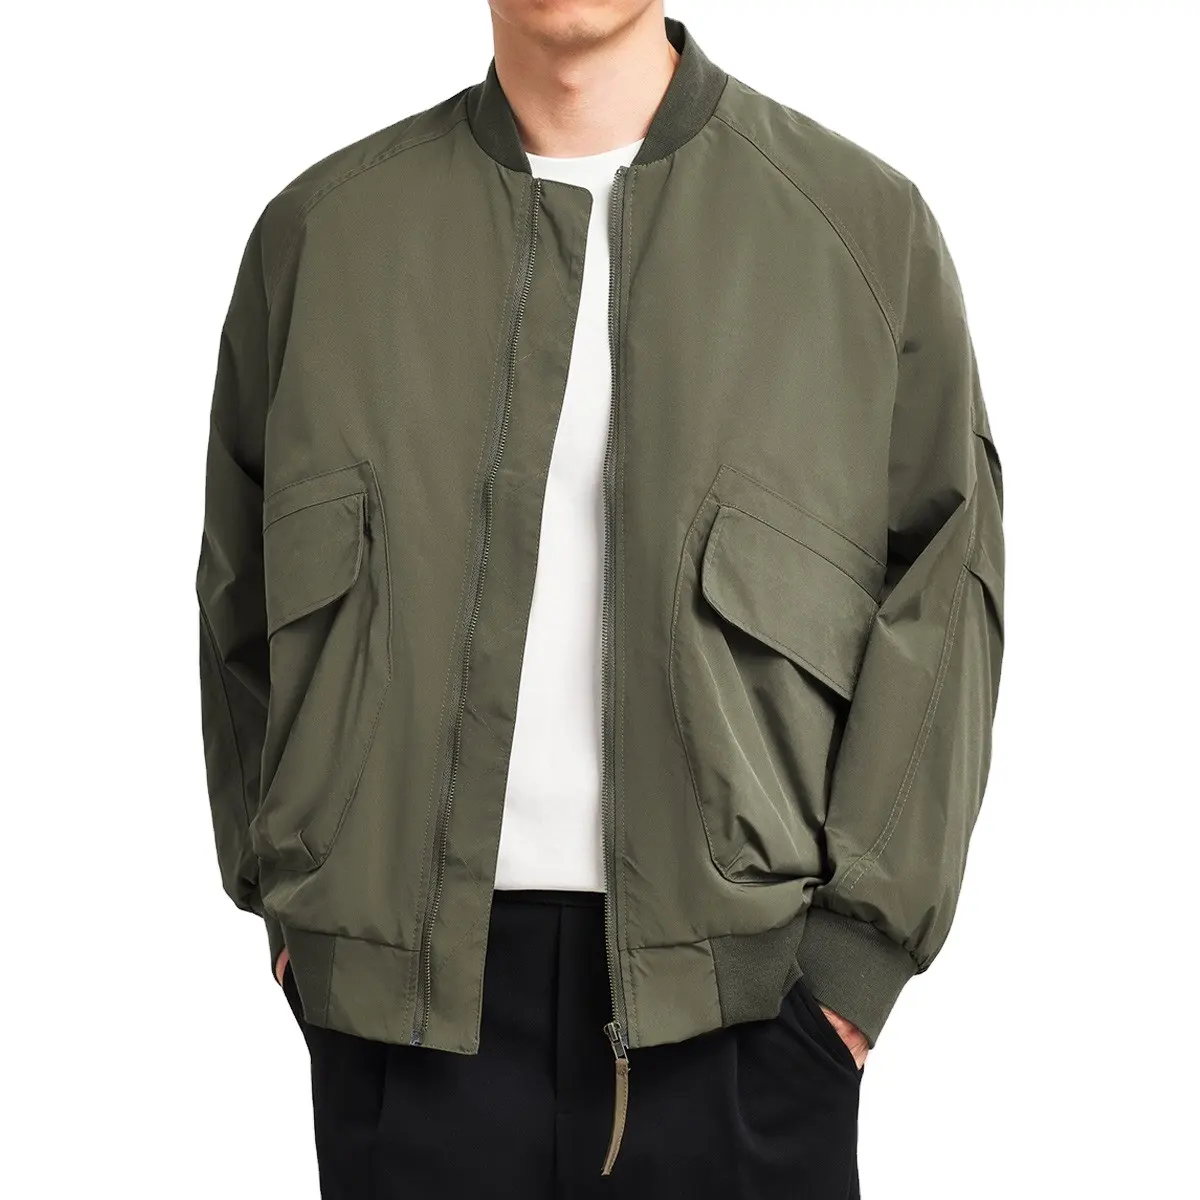 OEM ODM giacca personalizzata autunno colletto alla coreana tasche Multiple giacca a vento giacca Bomber per uomo